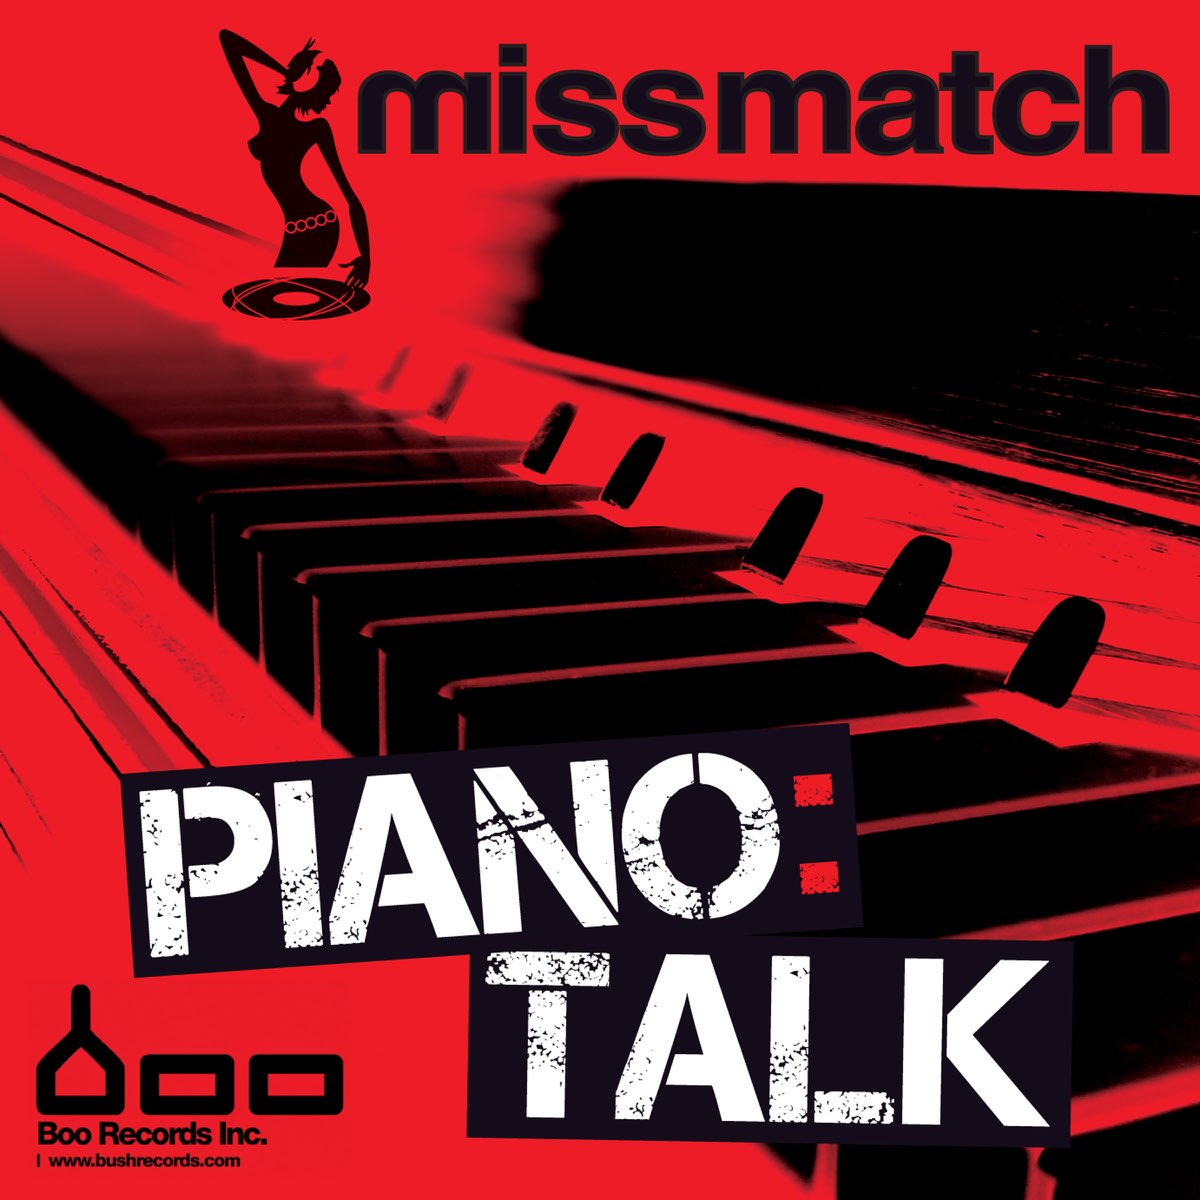 Musicmatch. Match музыка. Talk about Piano.